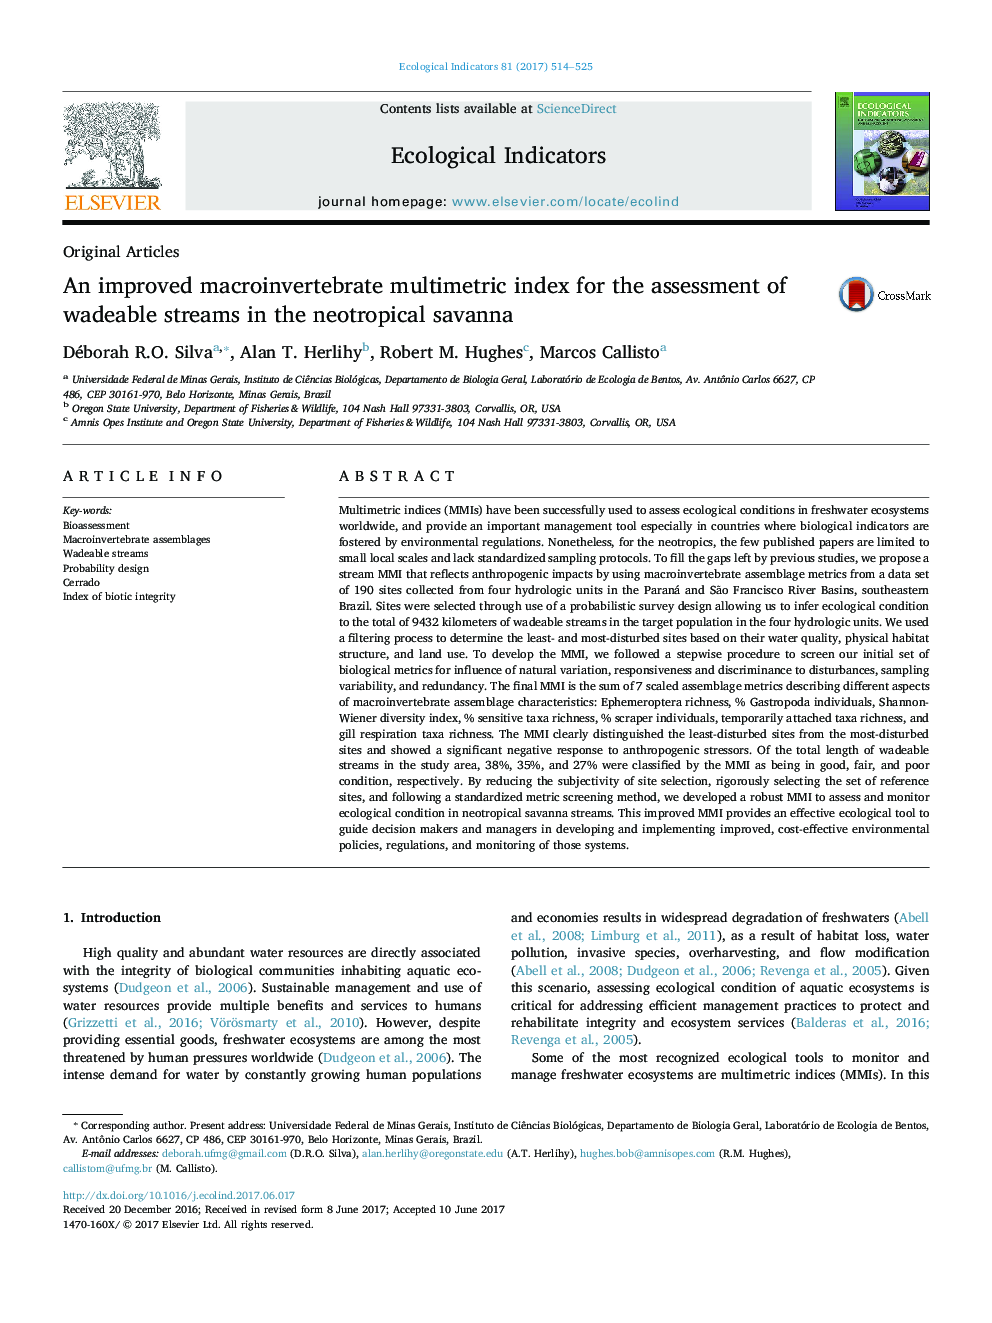 مقالات اصلی: شاخص مولتی متری ماکرومولورباتیک را برای ارزیابی جریانهای لرزان در ساوانا نئوتروپیک 